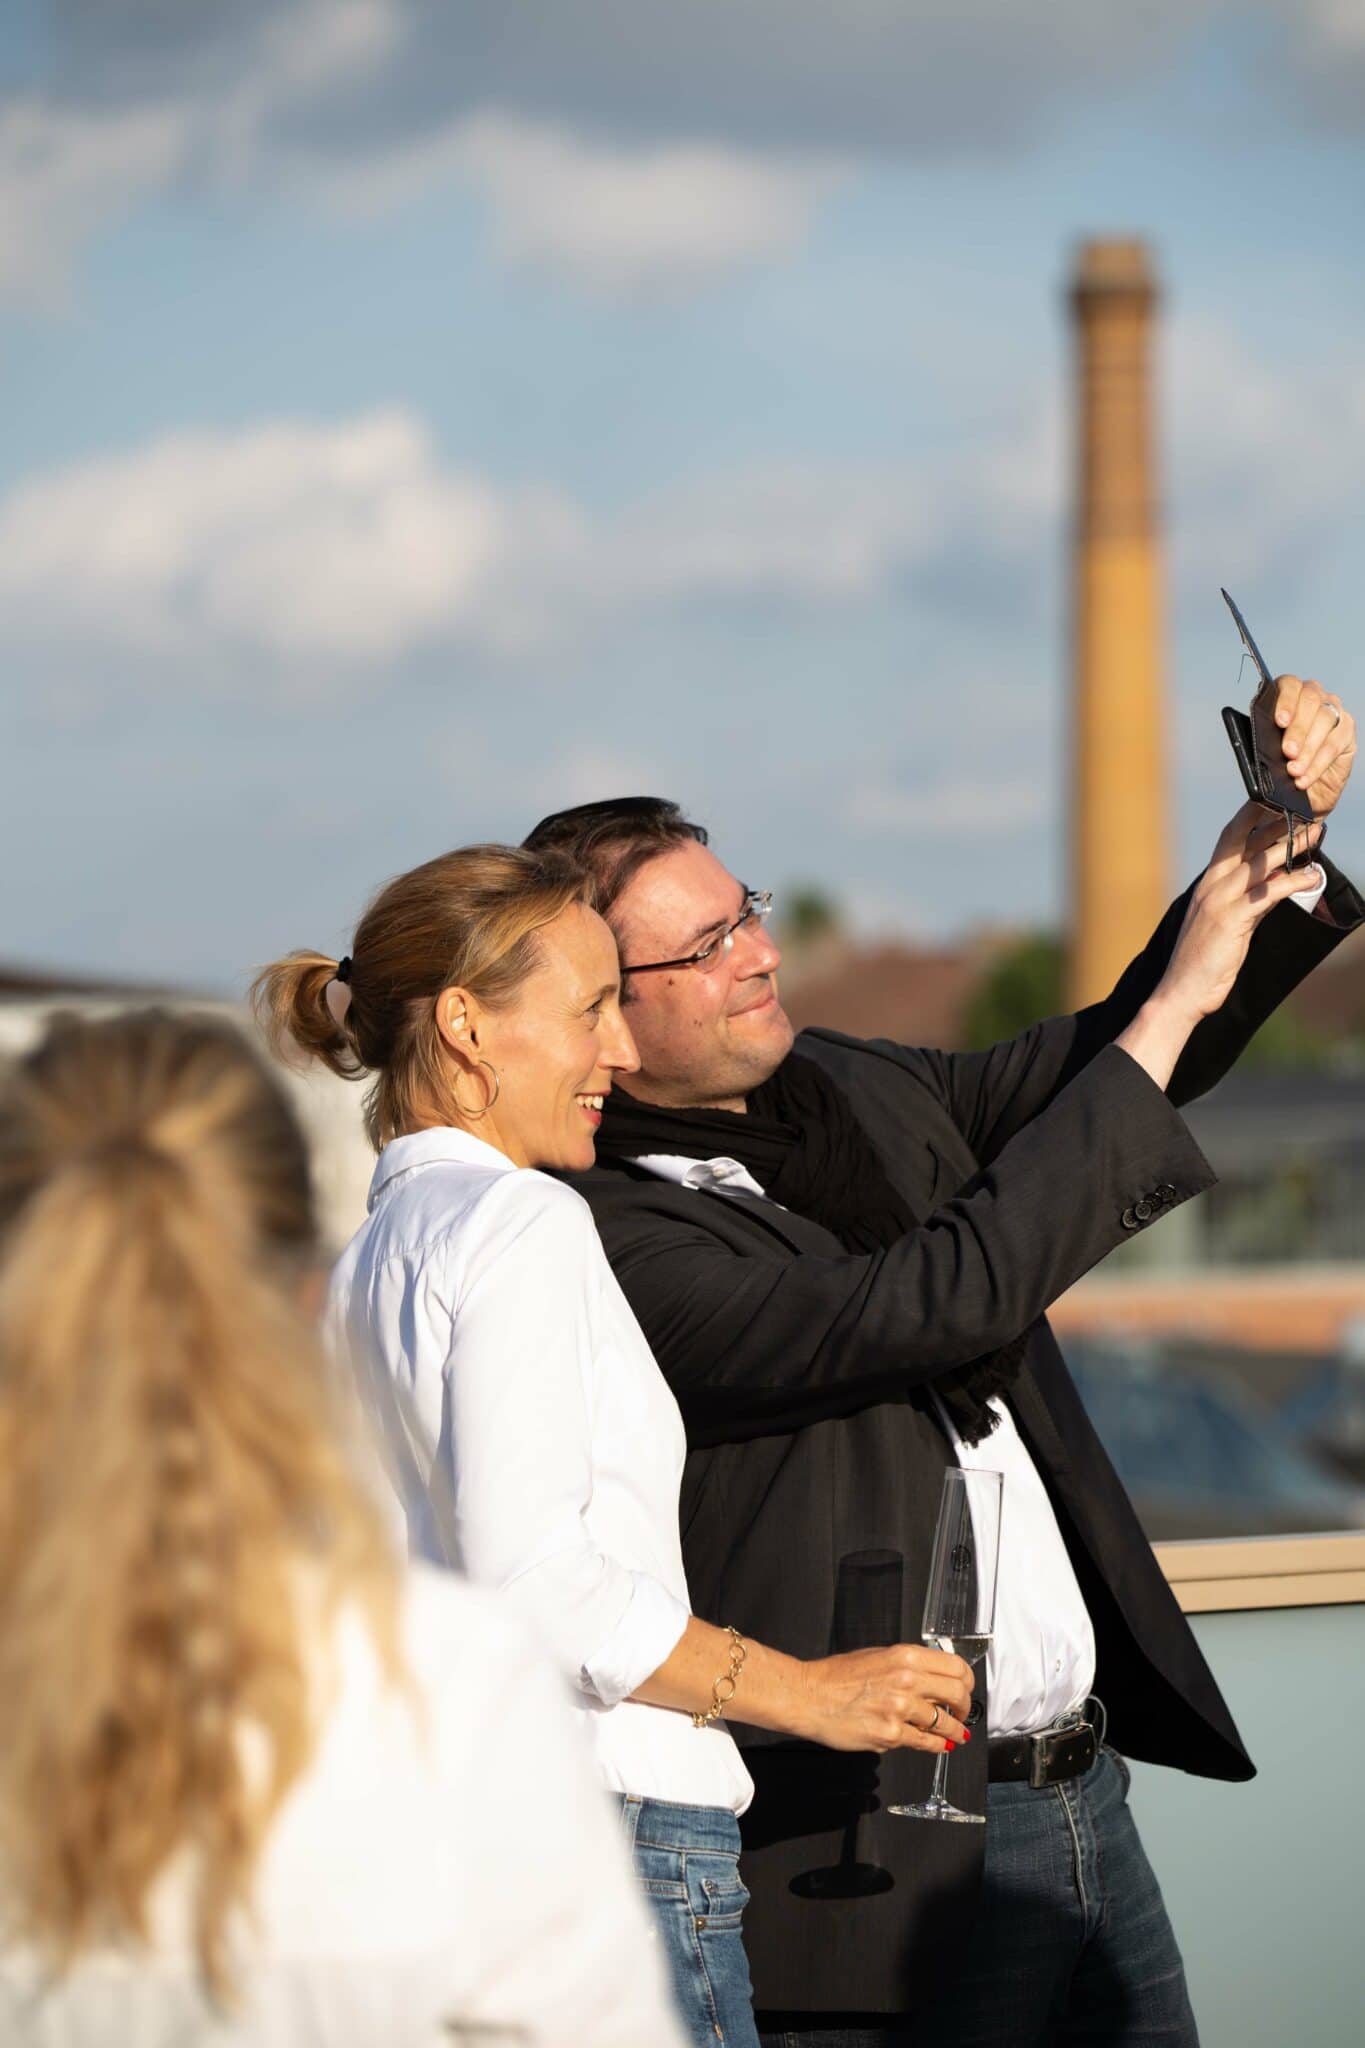 Hochschulpräsident Prof. Dr. René Seidenglanz beim Selfie mit Programmleiterin Kirsten Altenhoff. (Foto: Anelienne)